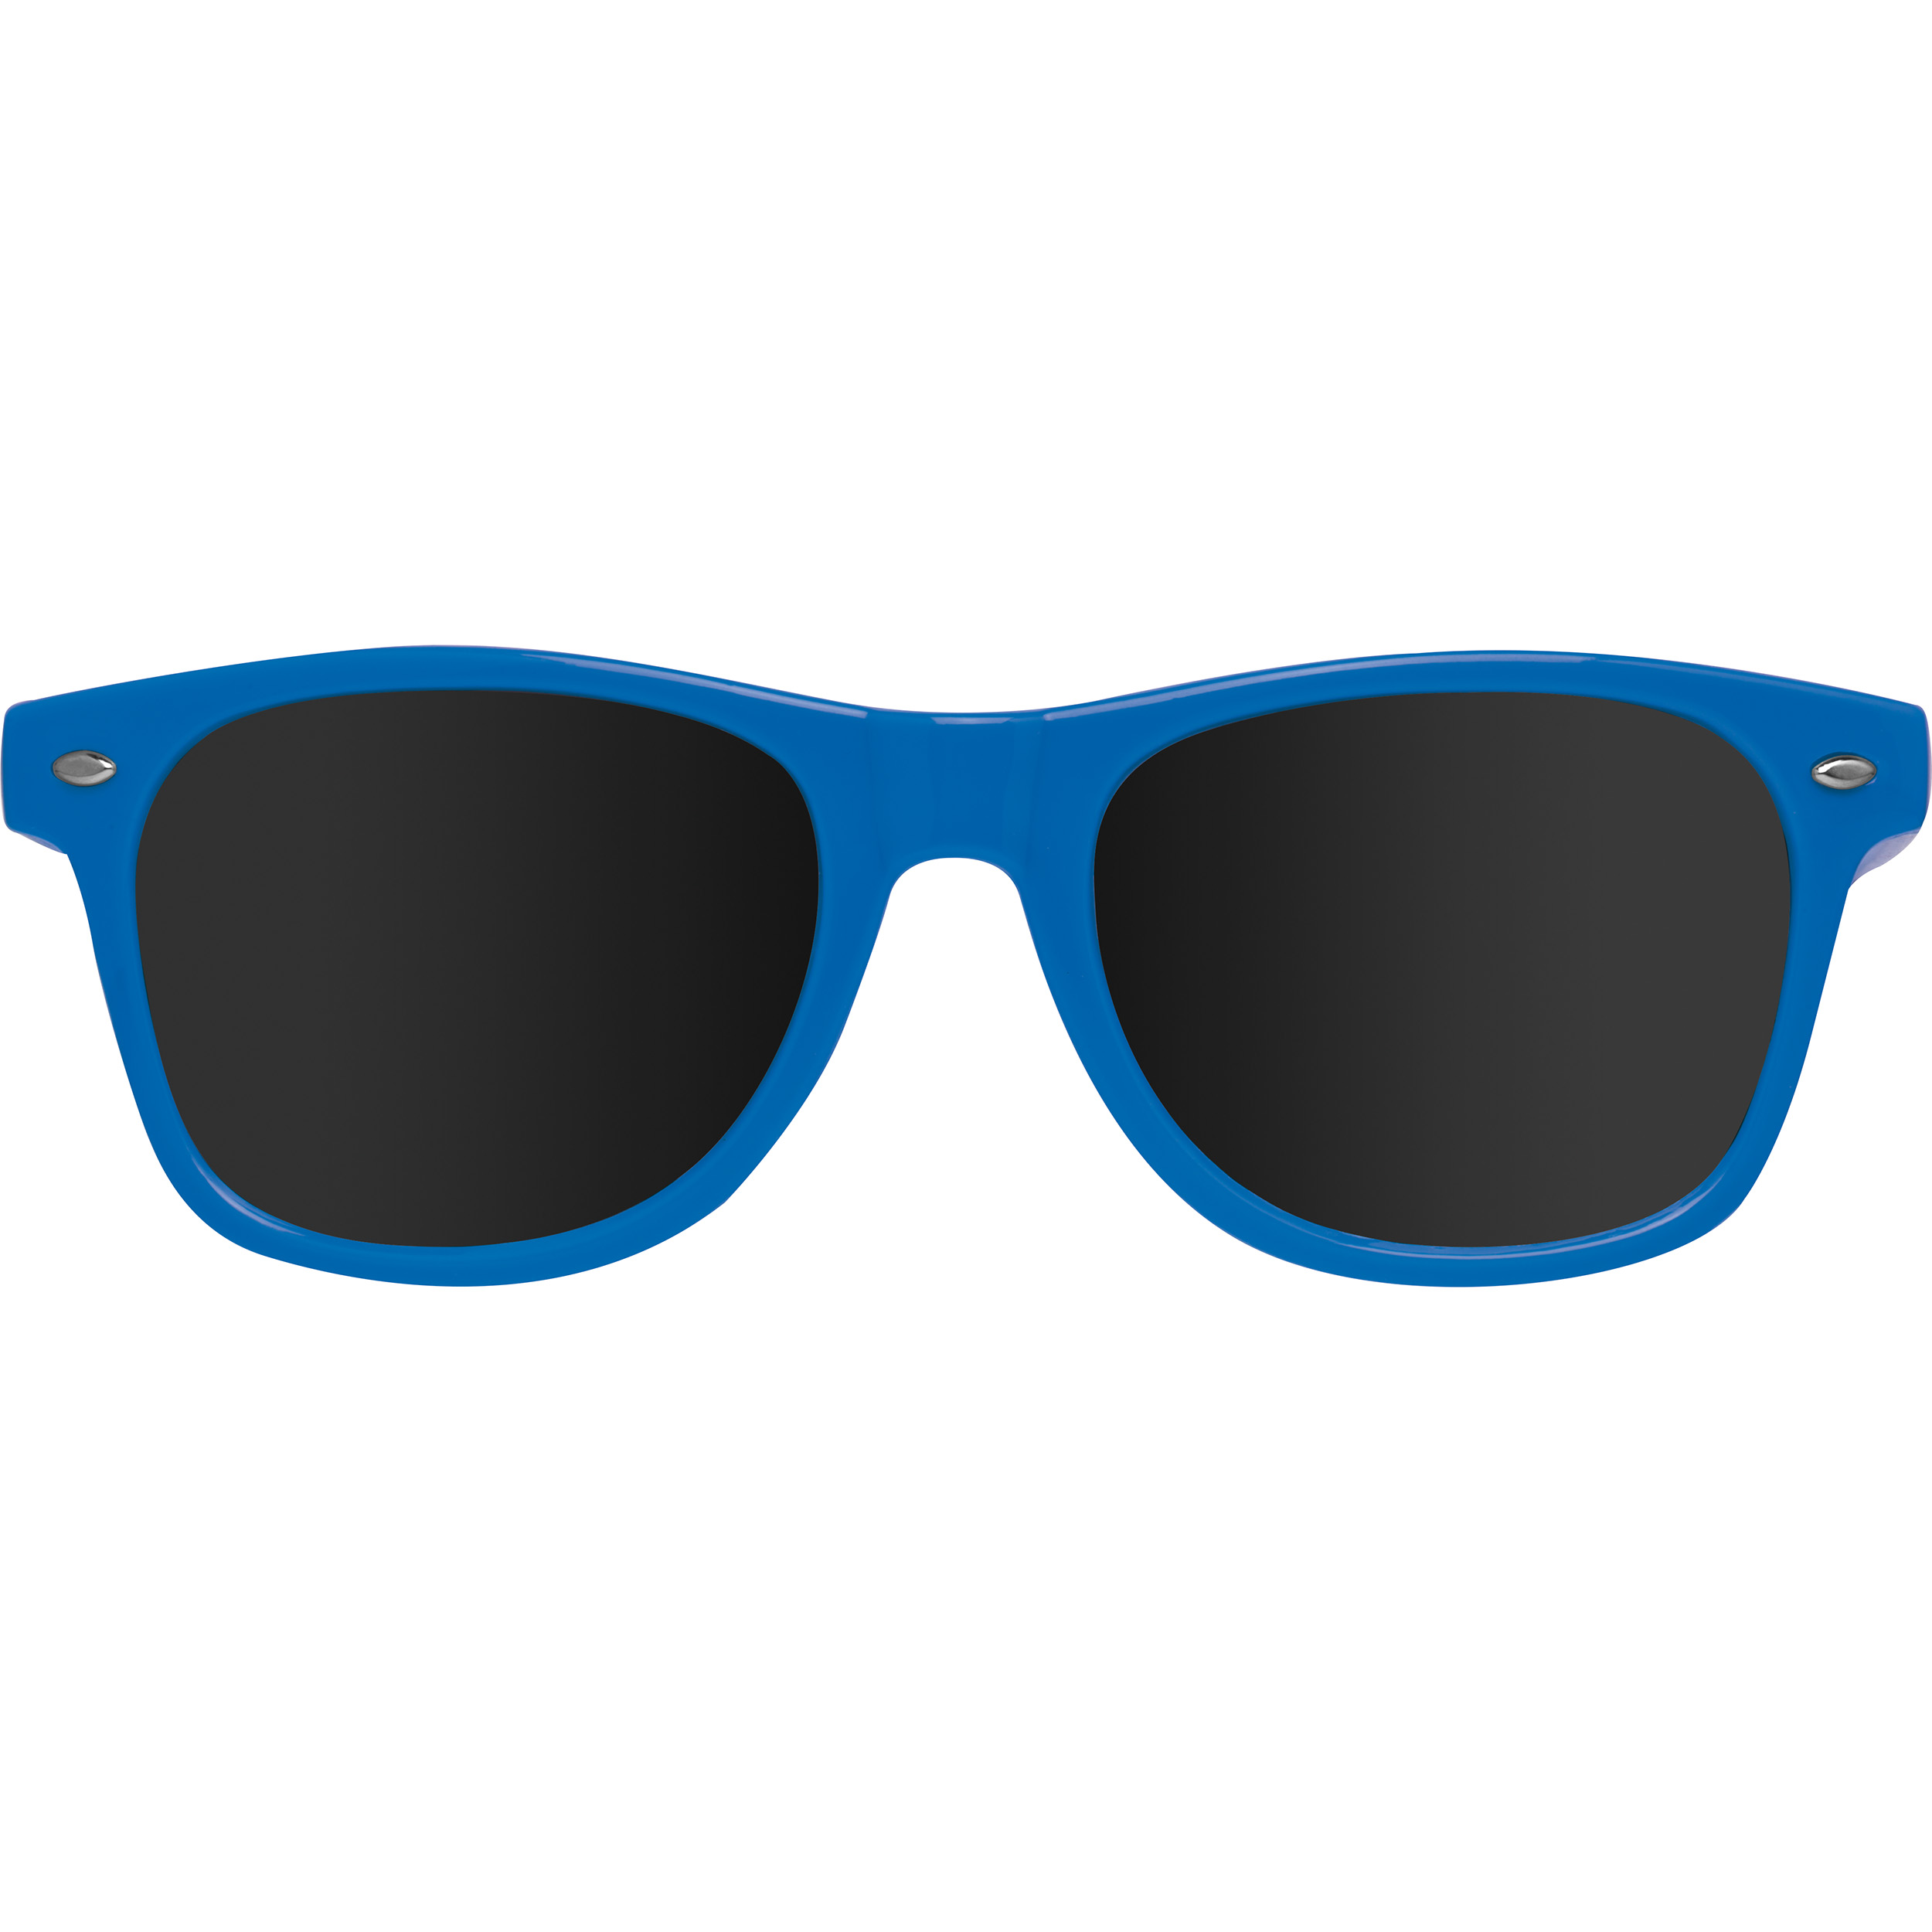 Sonnenbrille aus Kunststoff im "Nerdlook", UV 400 Schutz